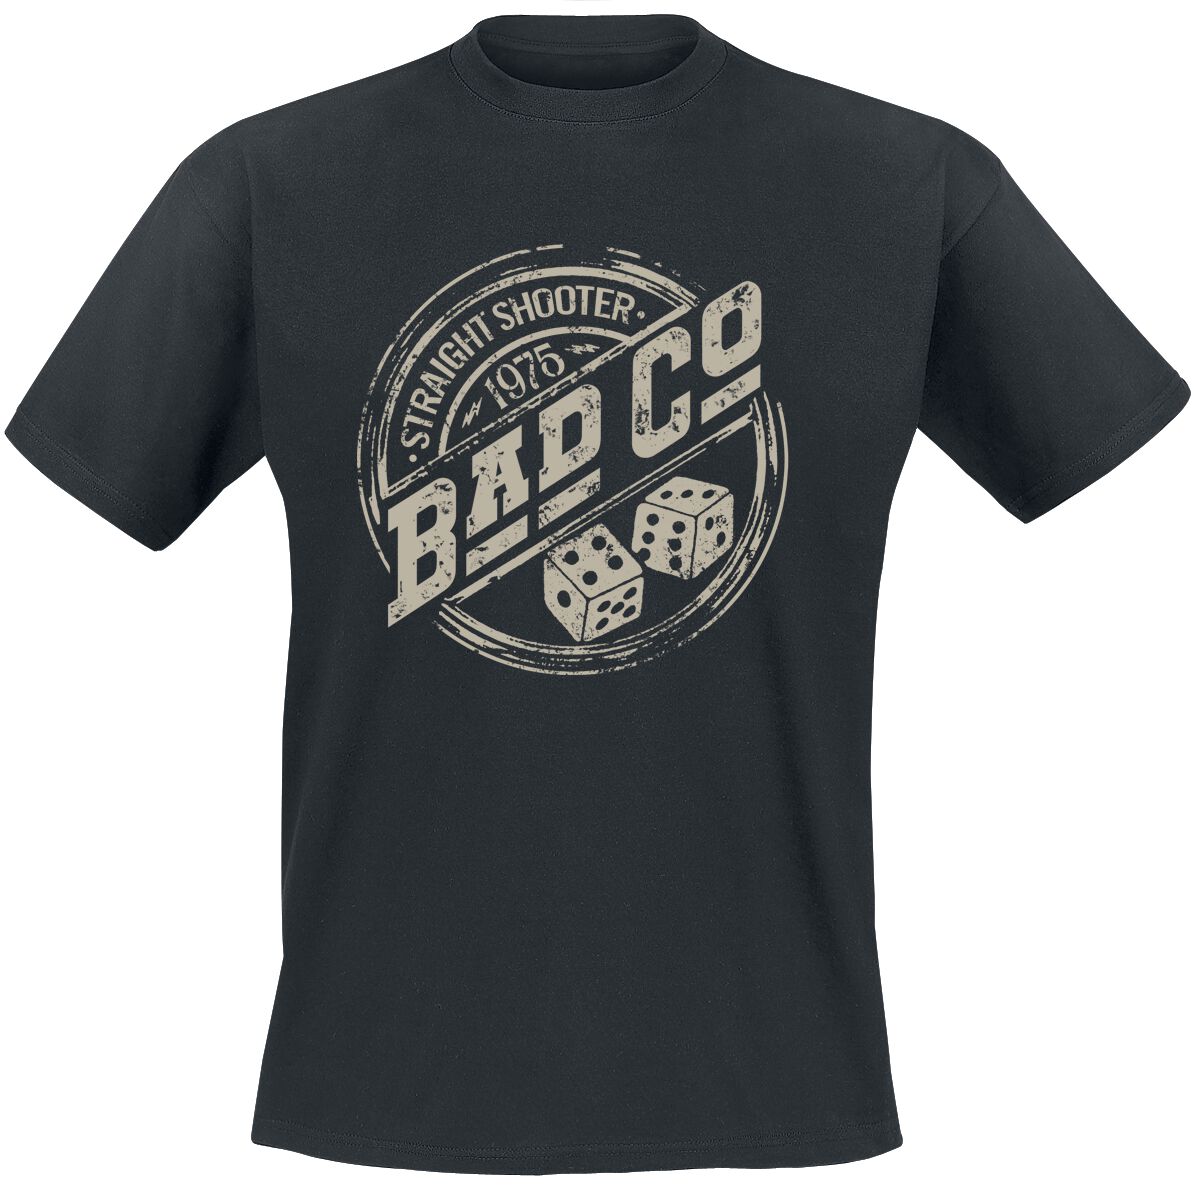 Bad Company T-Shirt - Straight Shooter - S bis XXL - für Männer - Größe XXL - schwarz  - EMP exklusives Merchandise!